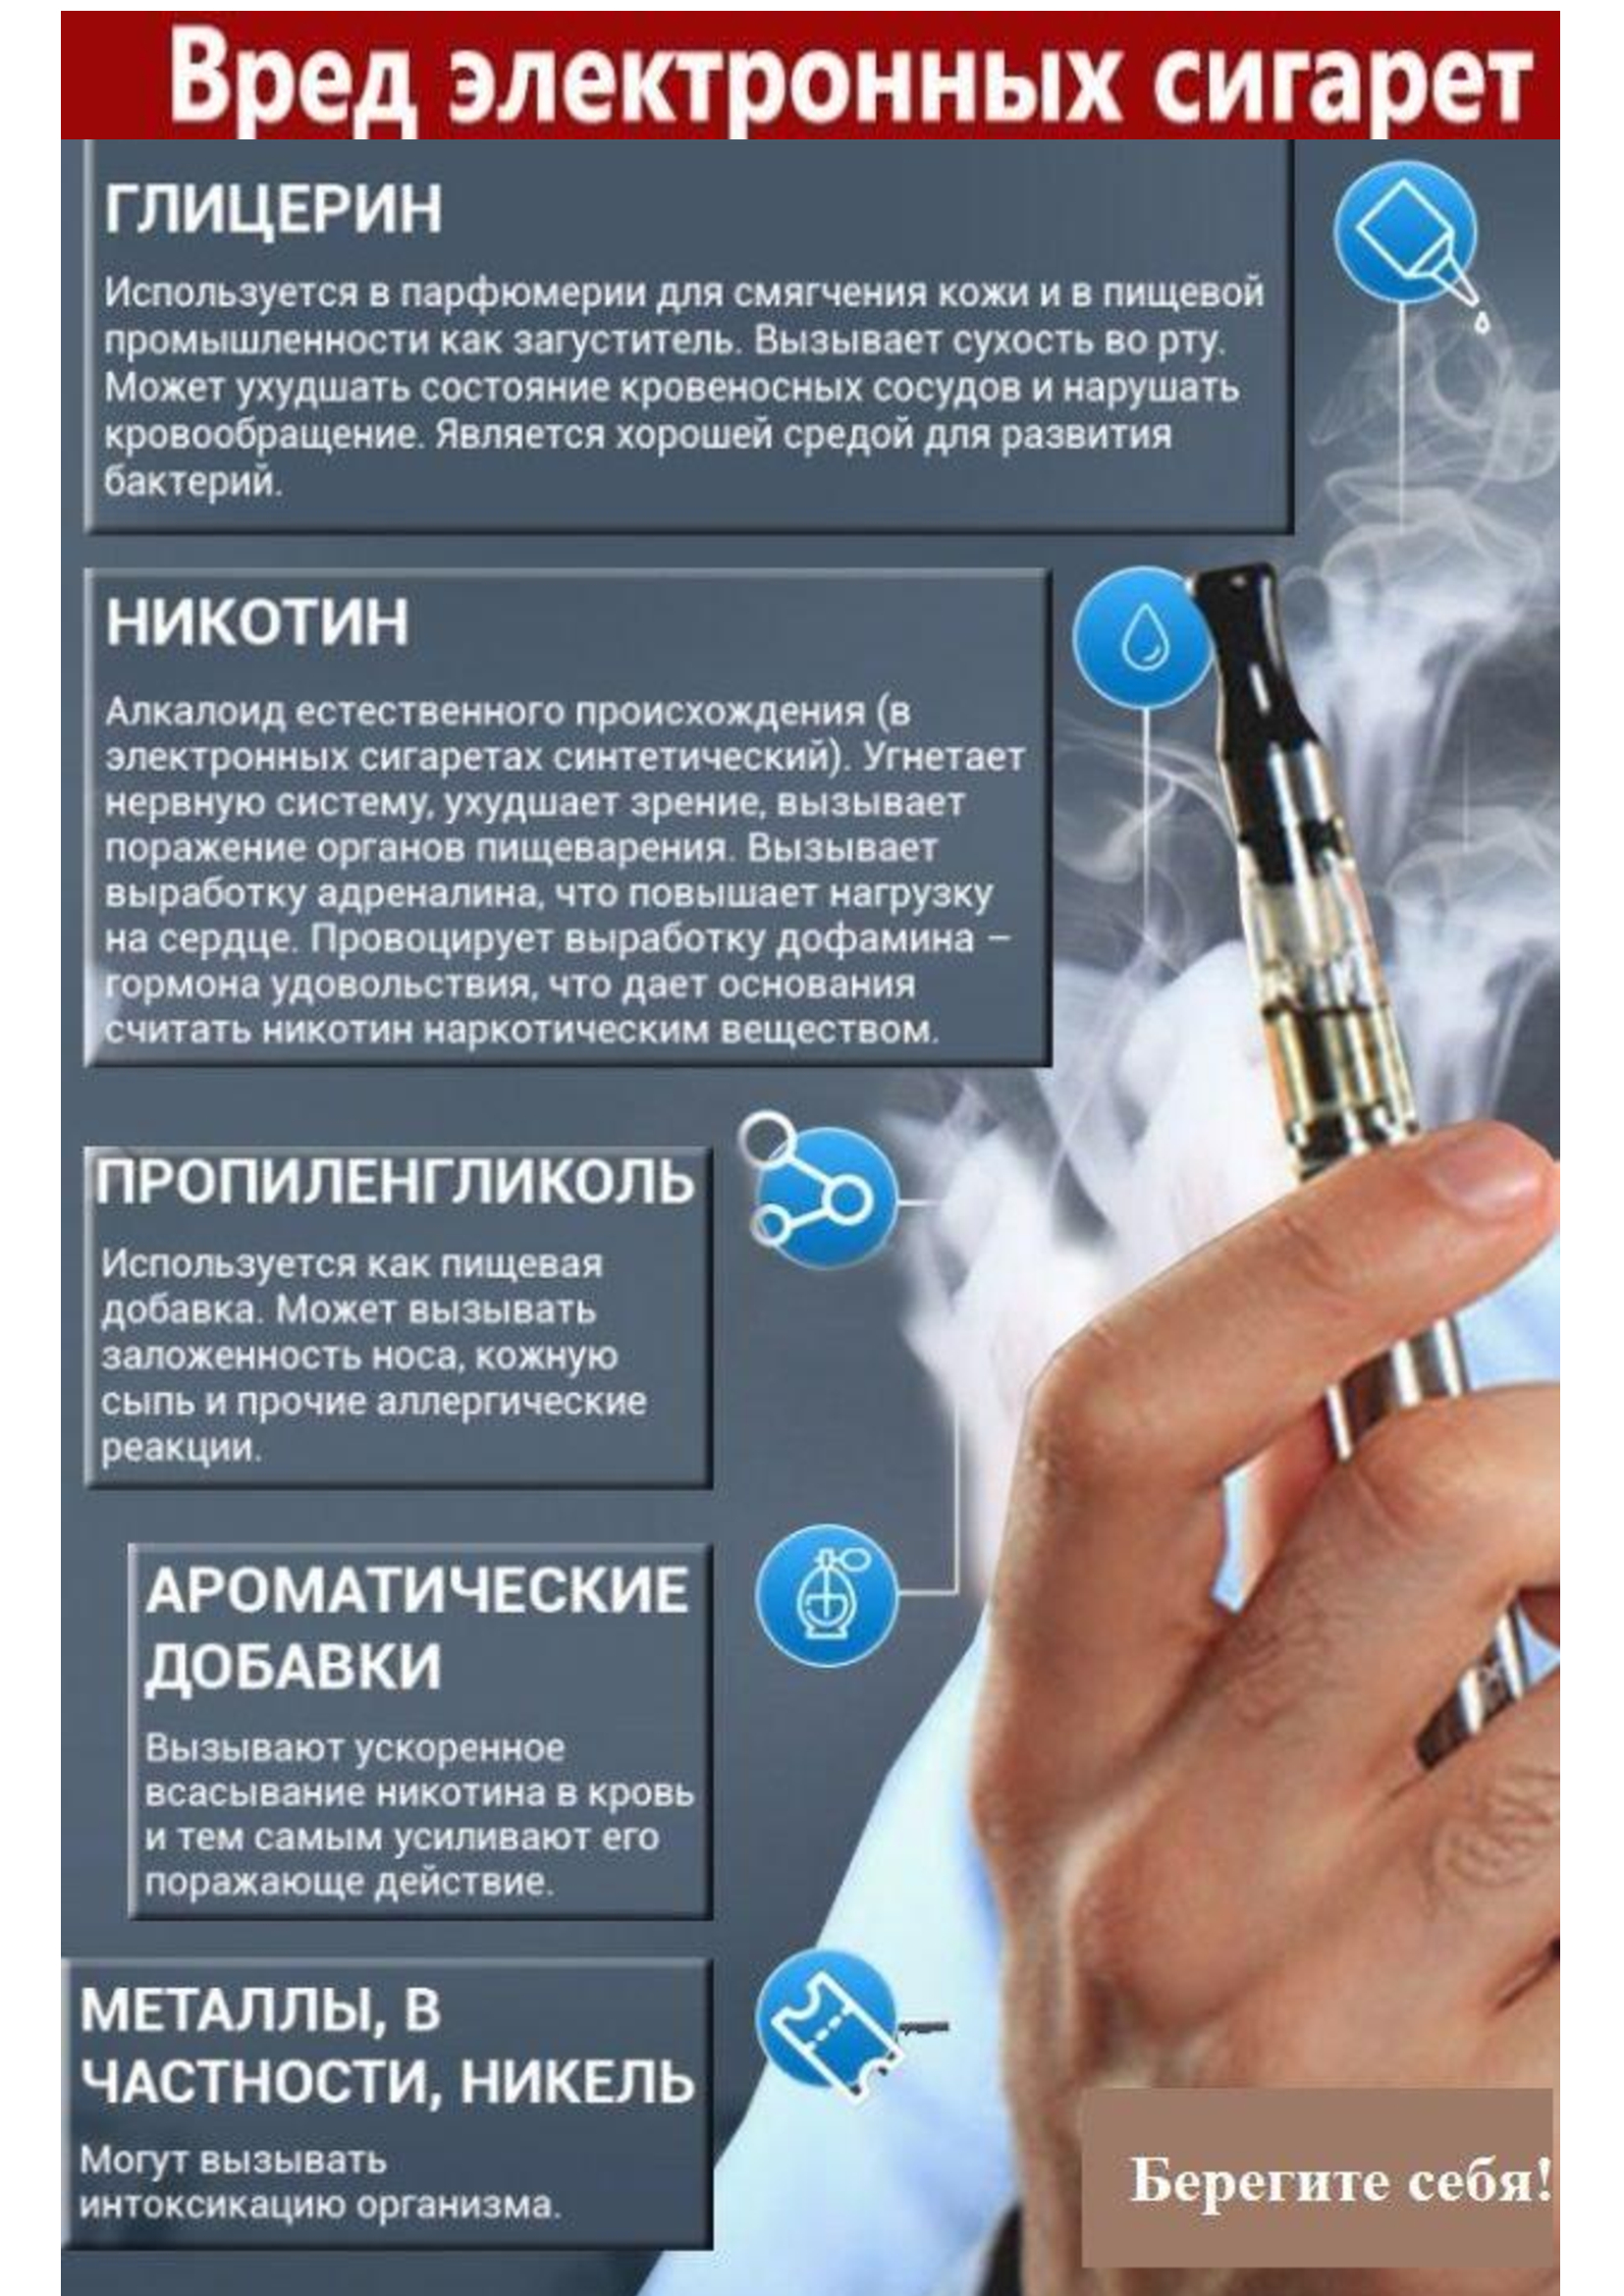 Почему нельзя курить после губ. Вред электронных сигарет. Чем вредны электронные сигареты. Электронки сигареты. Электронные сигареты вред для здоровья.